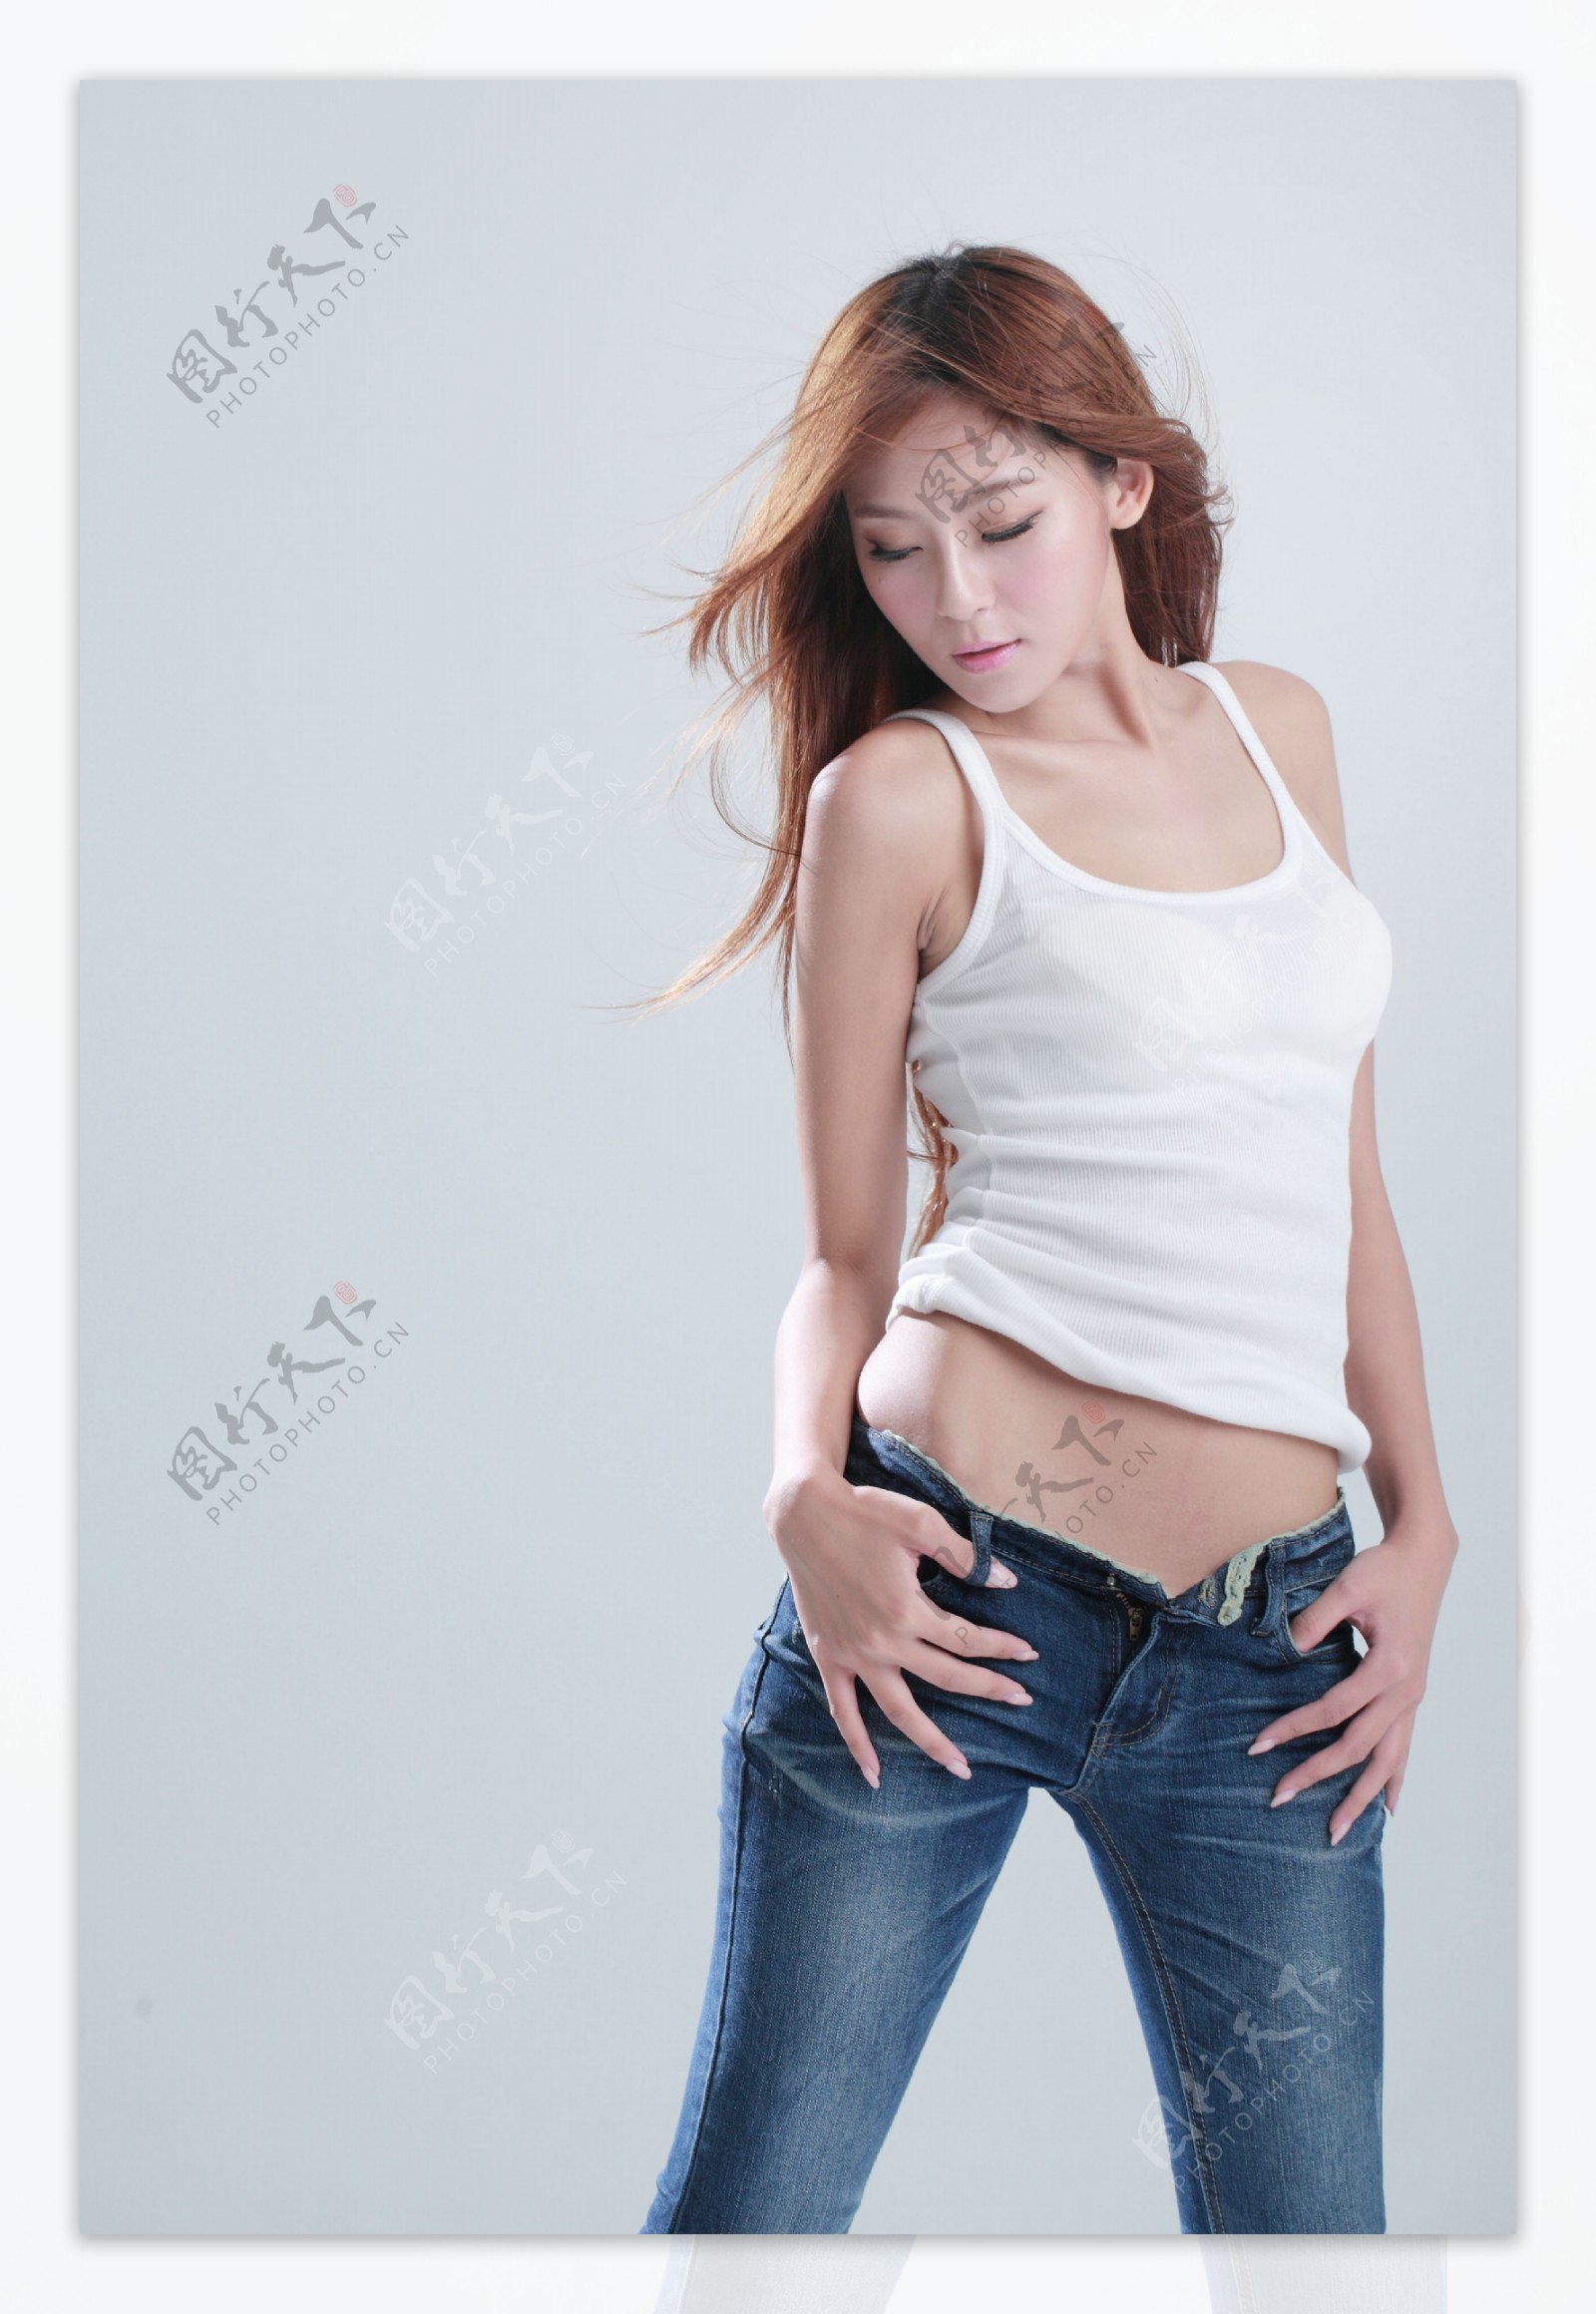 牛仔裤美女-魅丝社-专注分享美女写真名站摄影图集